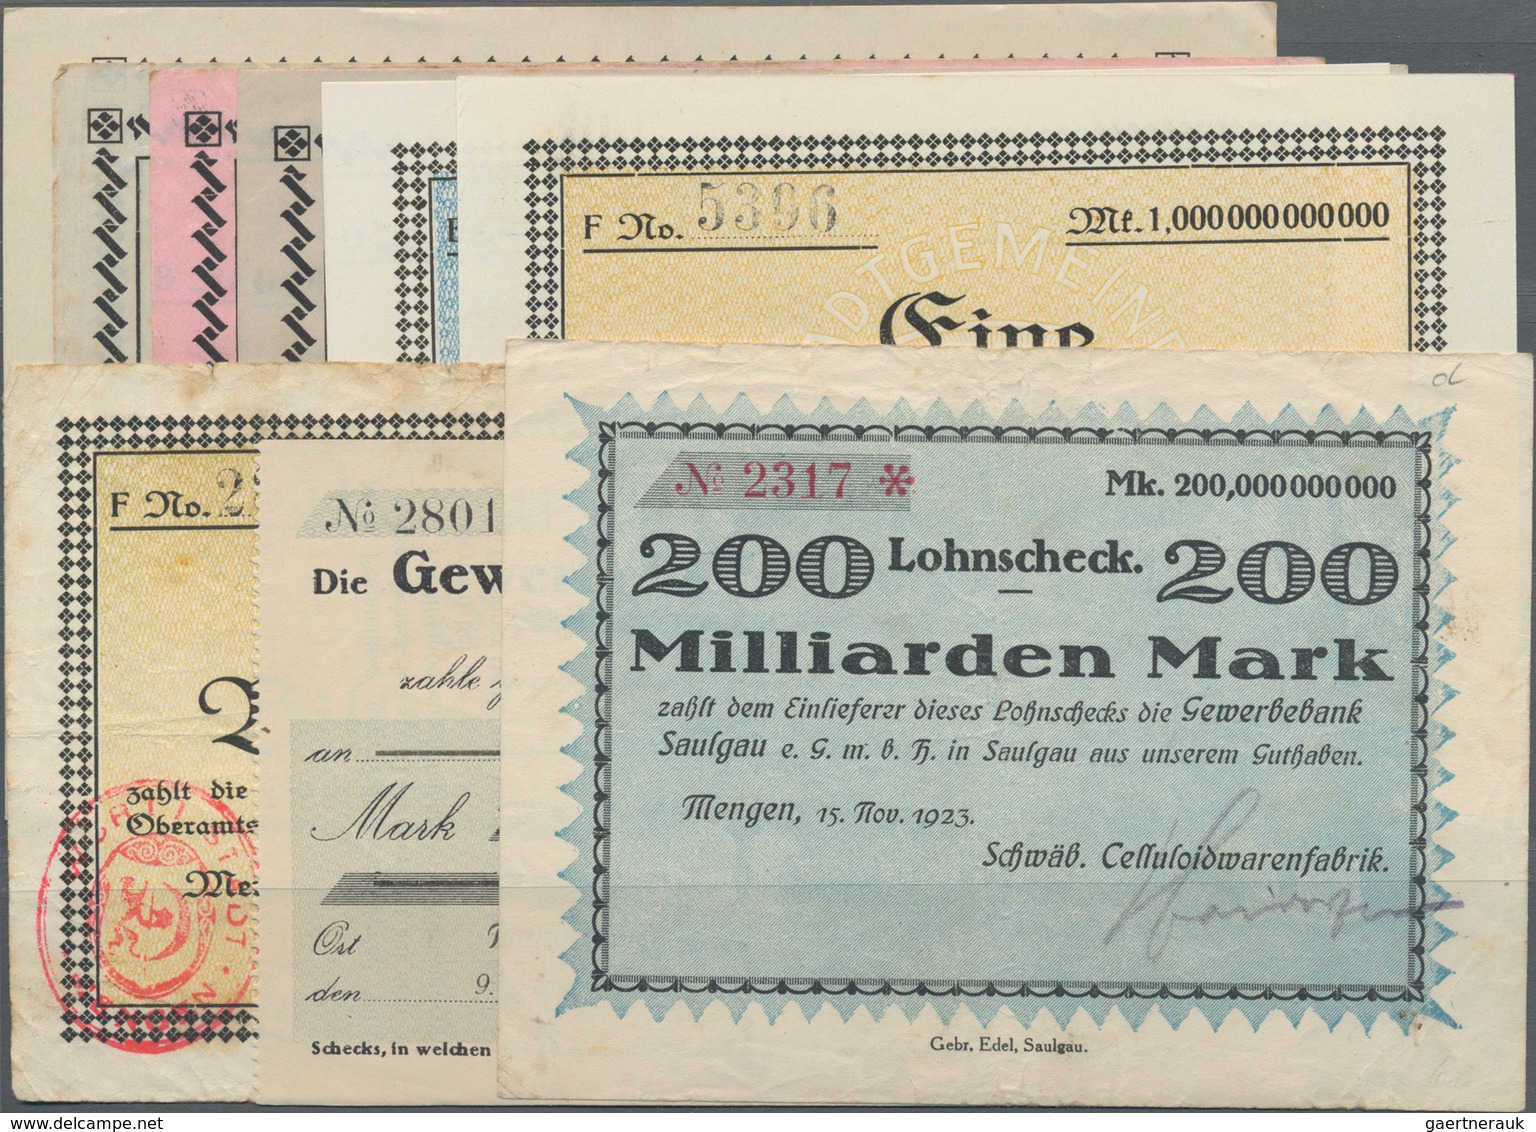 Deutschland - Notgeld - Württemberg: Mengen, Stadtgemeinde, 5, 10, 20 Mrd. Mark, 31.10.1923, 50 Mrd. - [11] Local Banknote Issues